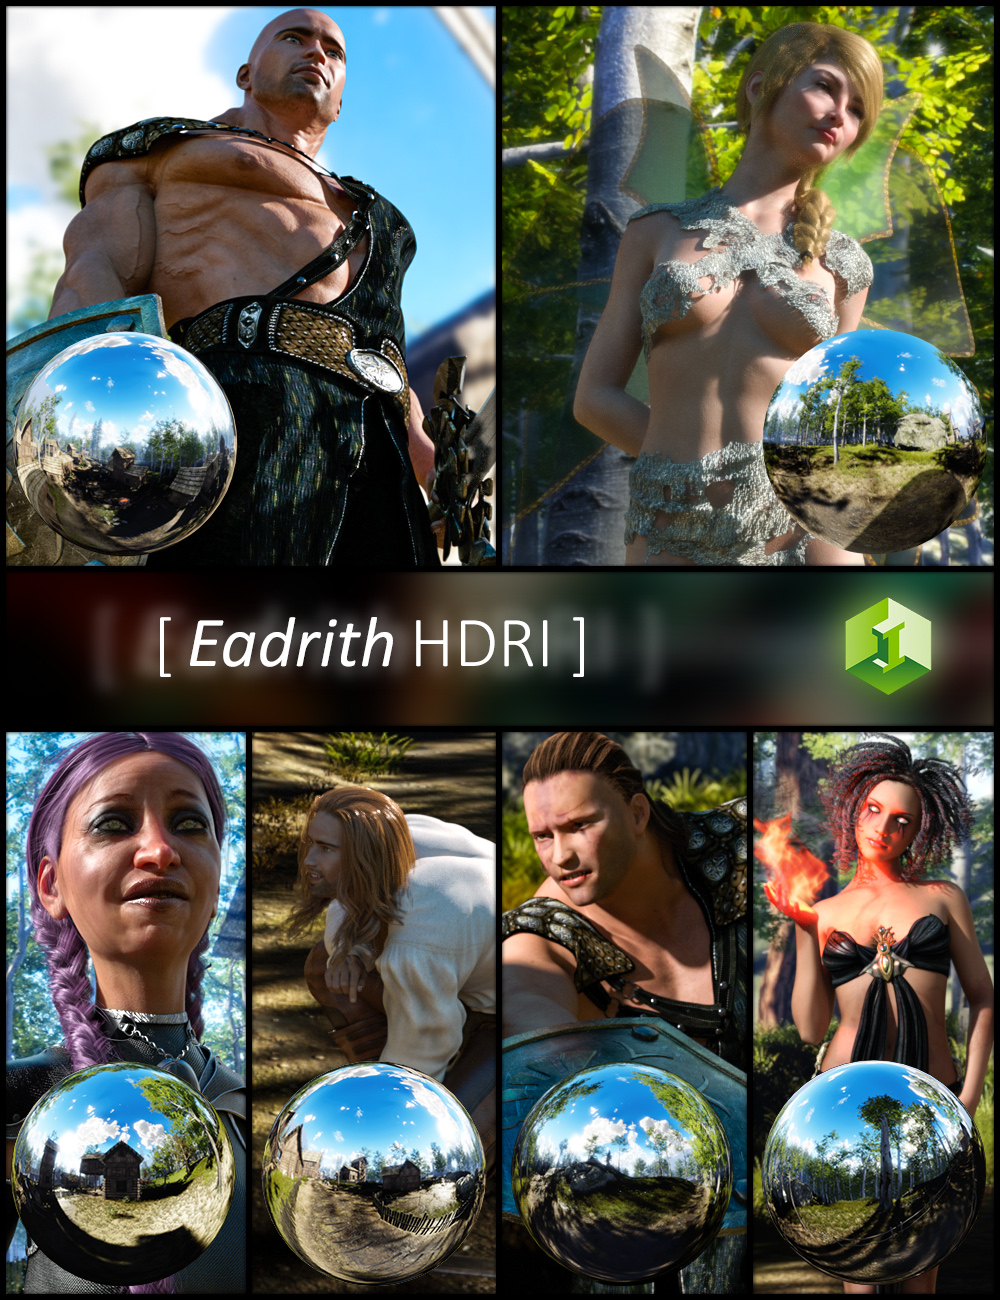 Eadrith HDRI by: JDA HDRI, 3D Models by Daz 3D